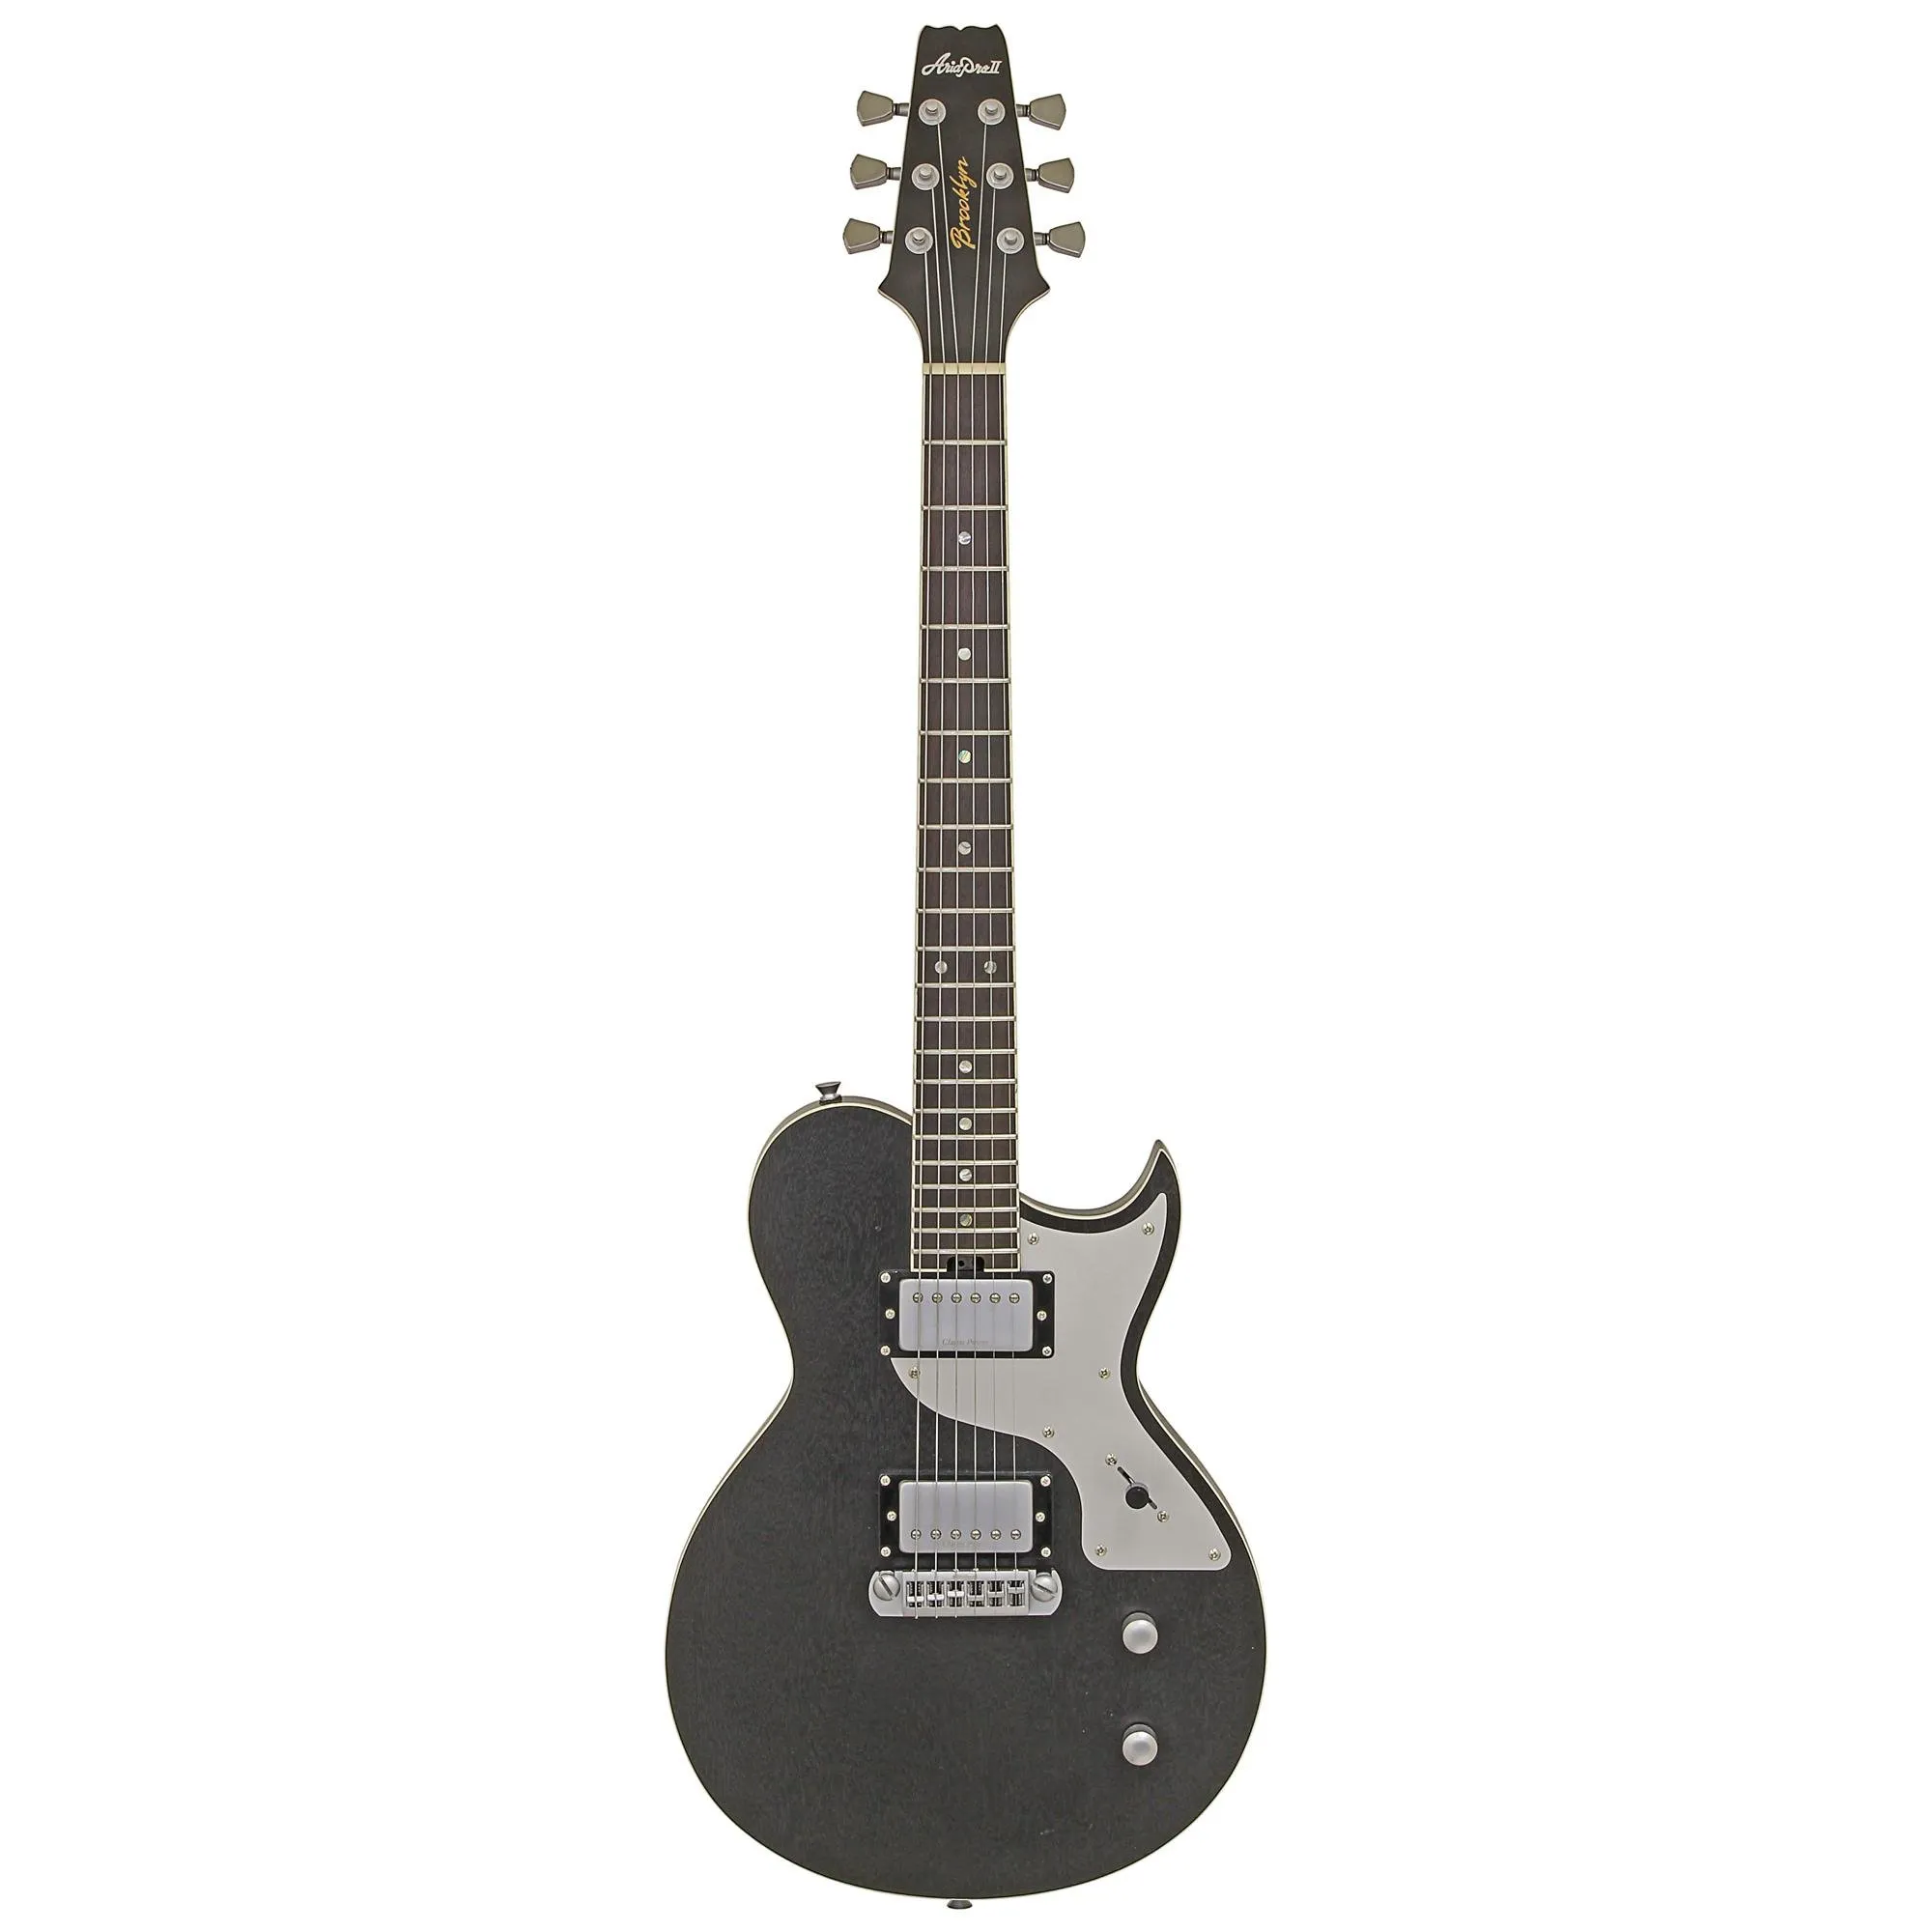 Guitarra Aria Pro II 718-MK2 Brooklyn Open Pore Black por 0,00 à vista no boleto/pix ou parcele em até 1x sem juros. Compre na loja Mundomax!